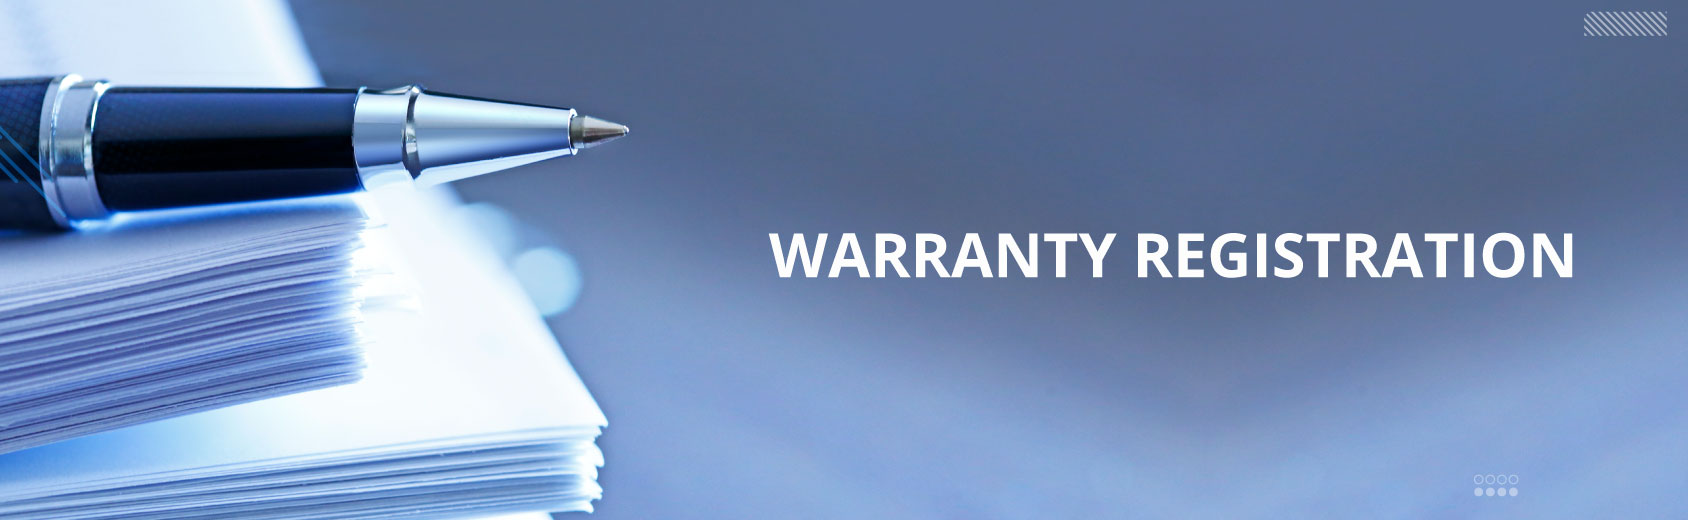 Warranty Registration | Luminous